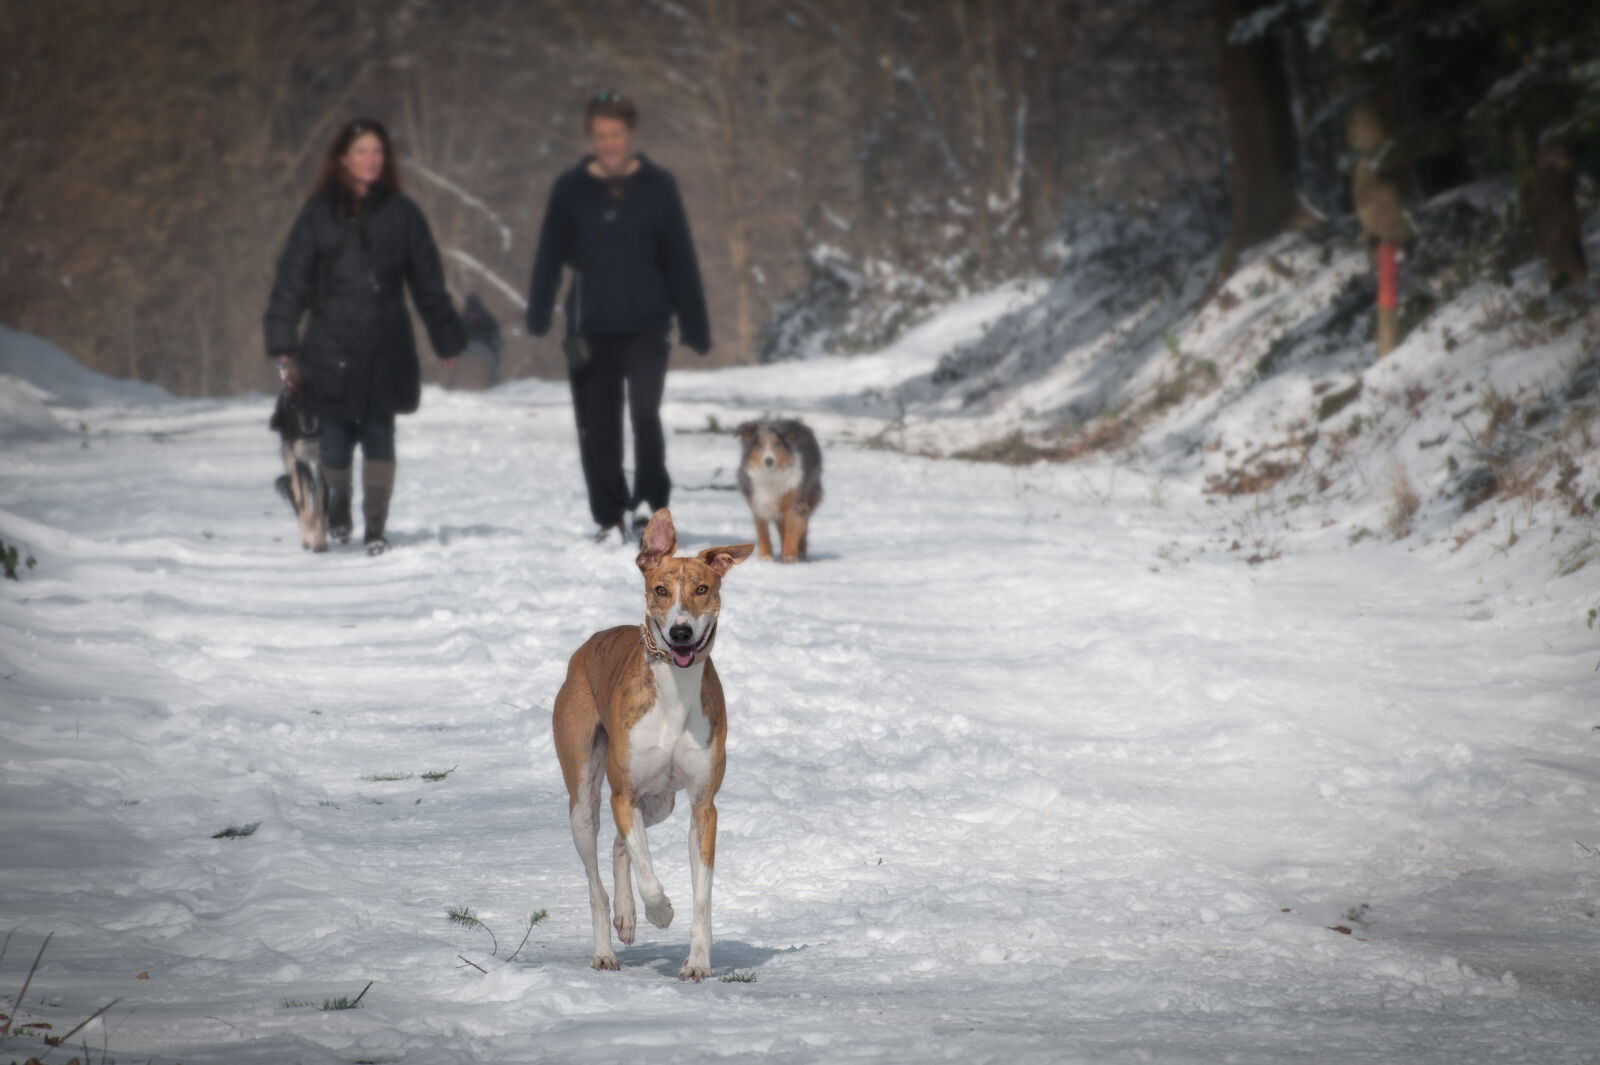 Nikon AF-S Nikkor 70-300mm F4.5-5.6G VR sample photo. Winter, dog, pet, dogs photography